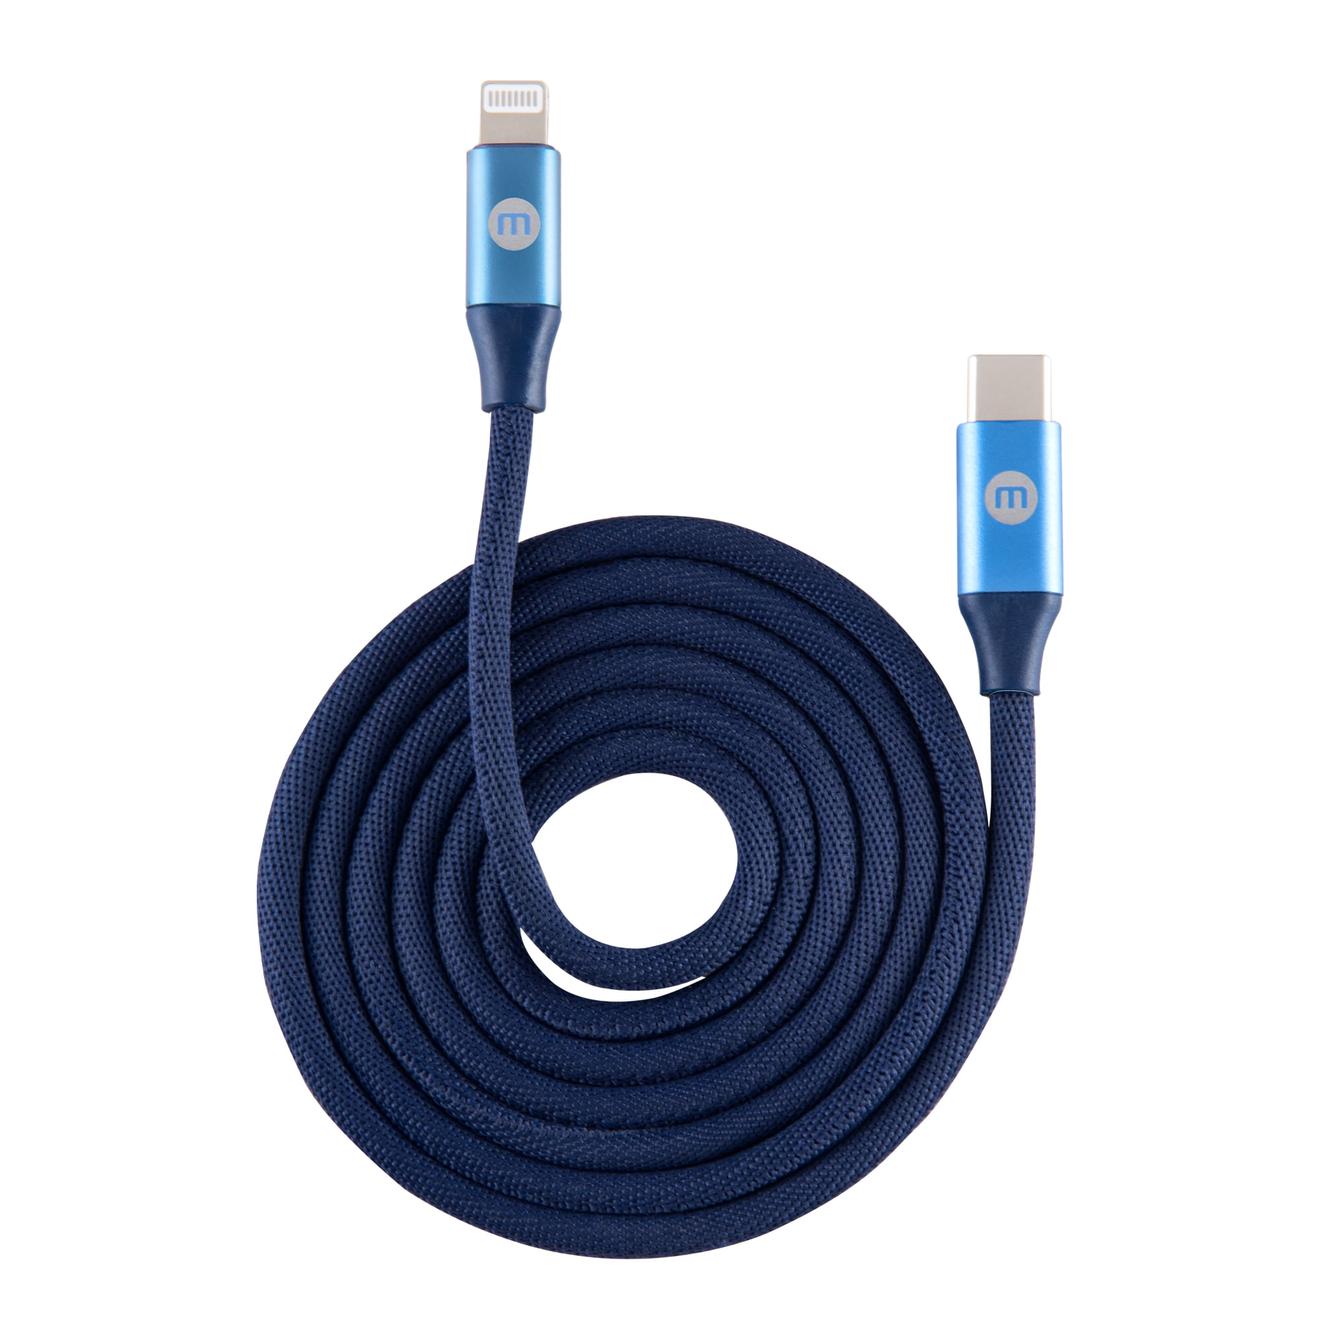 Oferta de Cable Mobo Knit Tipo C A Lightning Azul 1m por $159 en Mobo